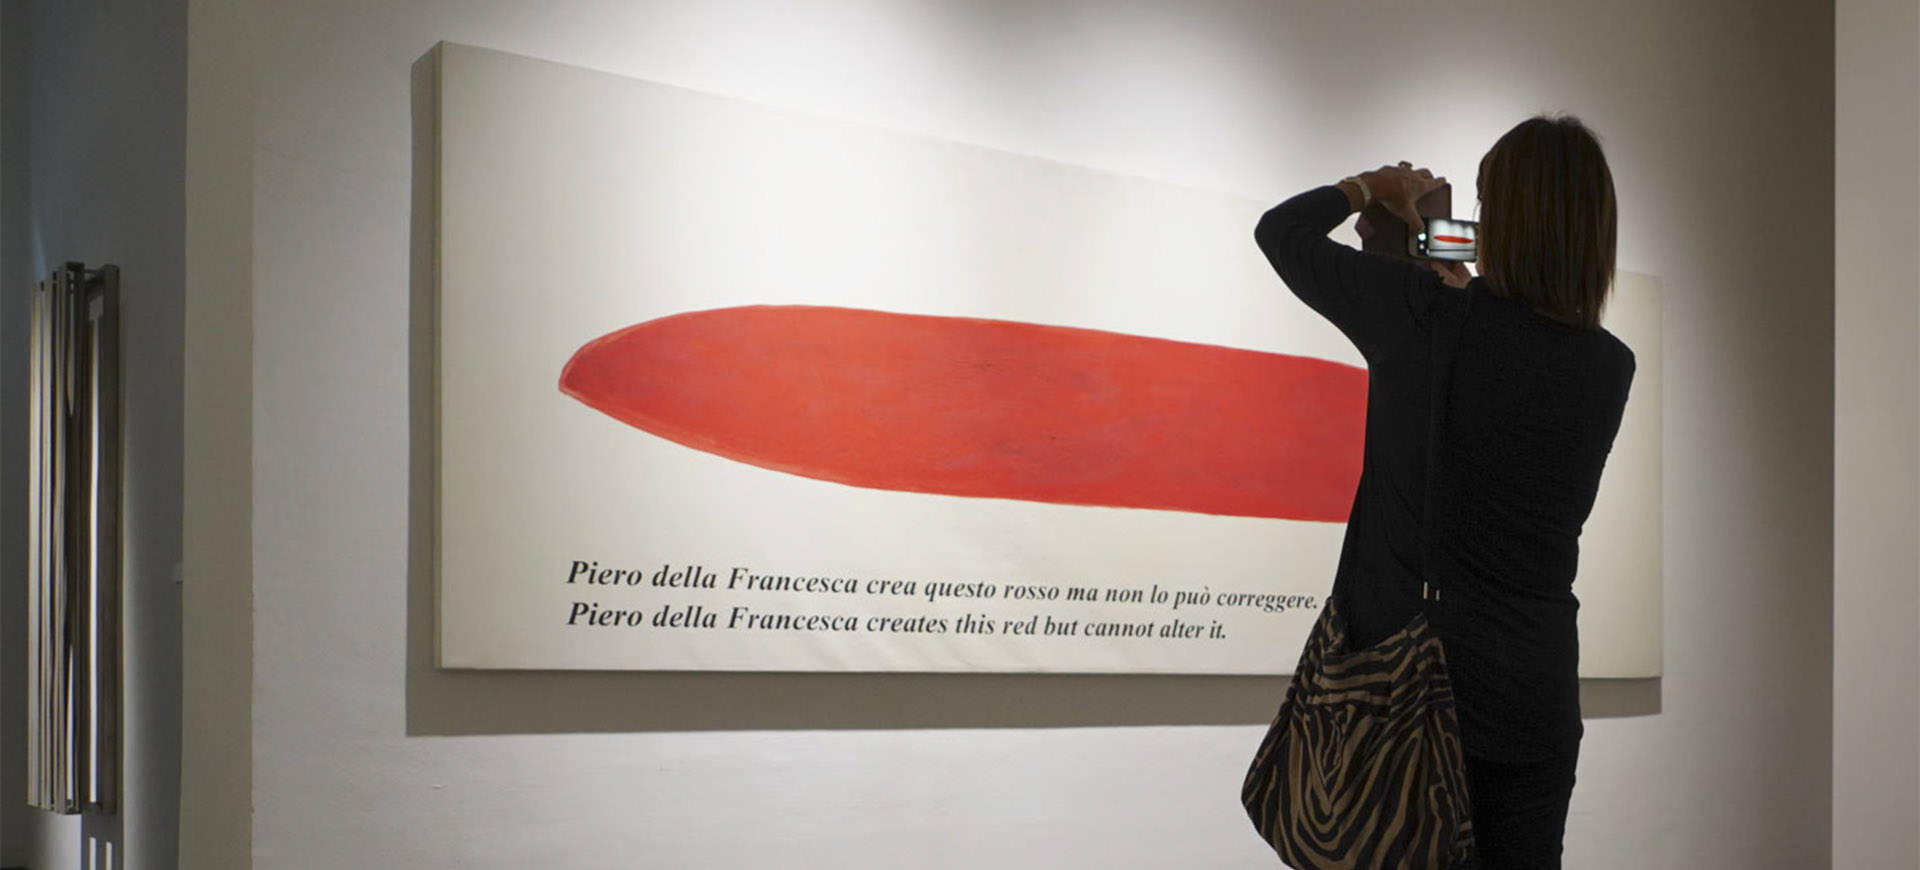 Adacto è partner di APE Parma Museo per raccontare la storia della Galleria Niccoli 1